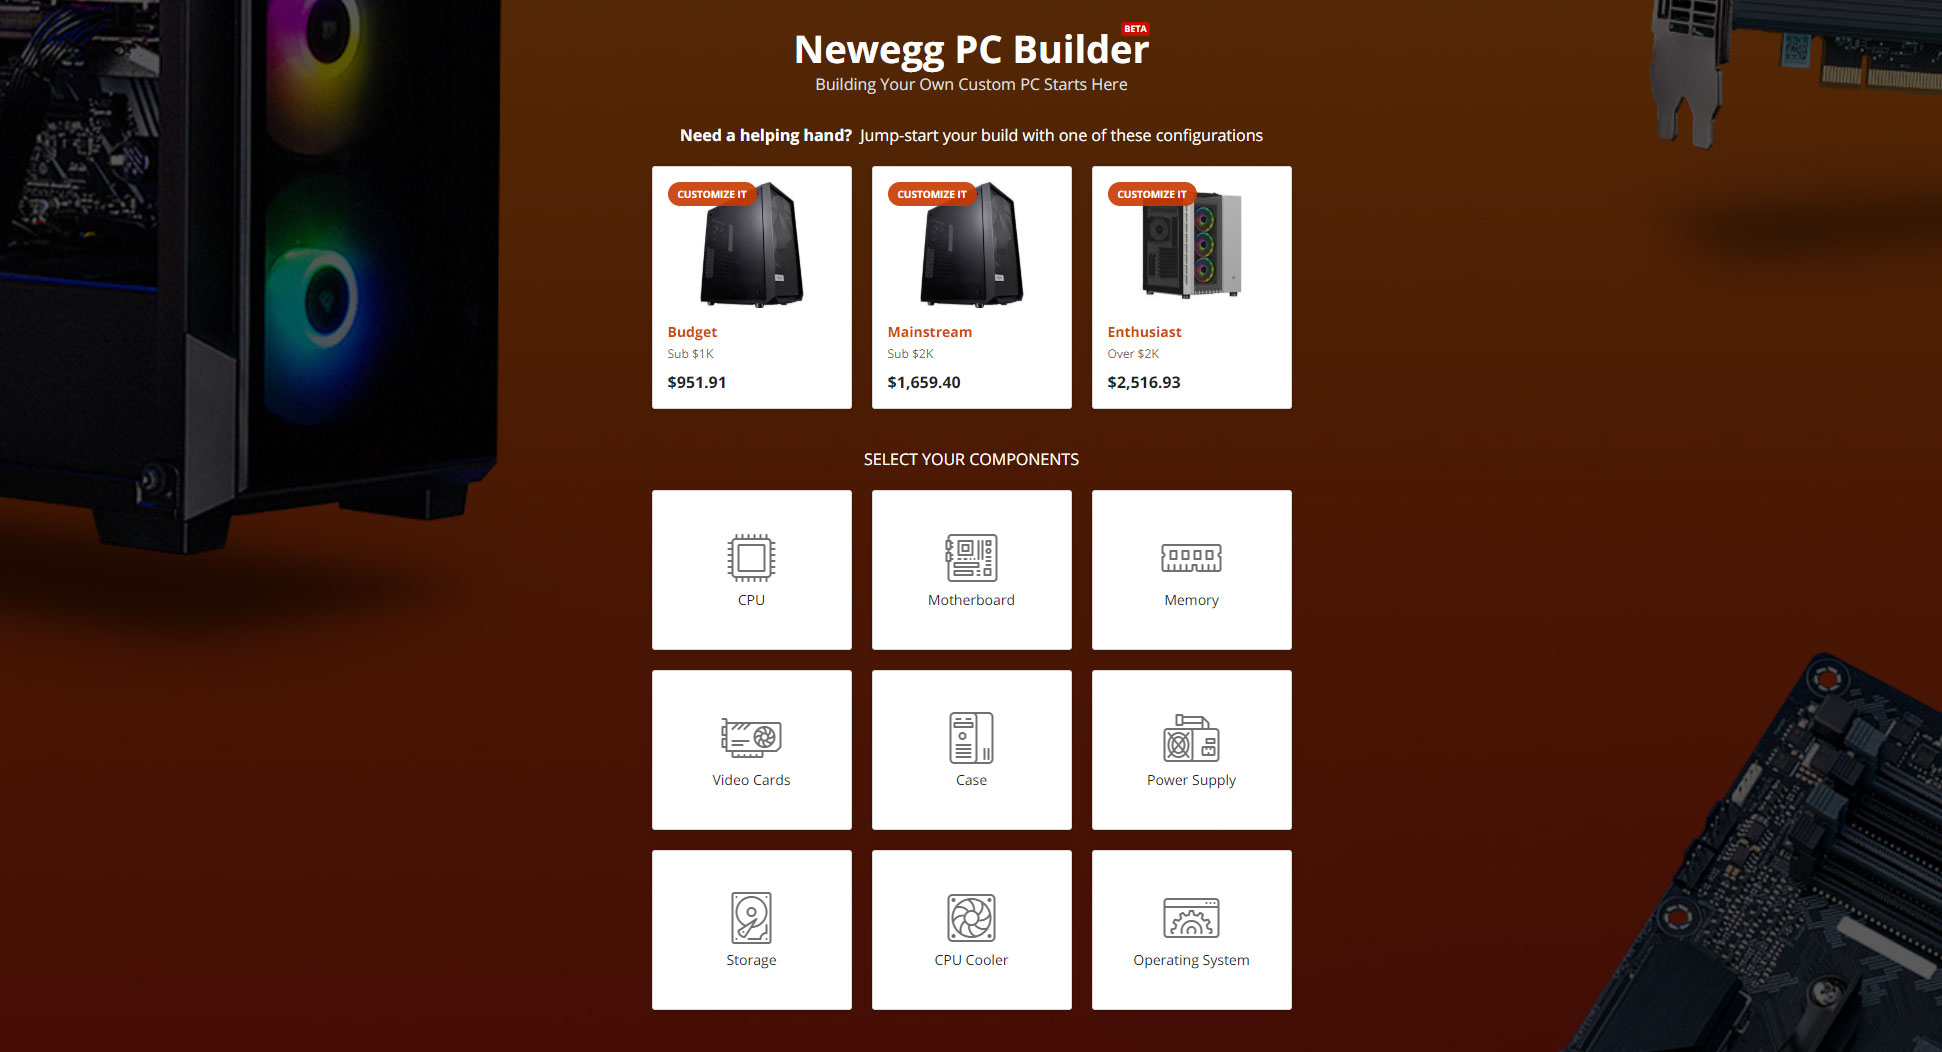 Newegg's new 'PC Builder' tool is neat, but I still prefer PCPartPicker